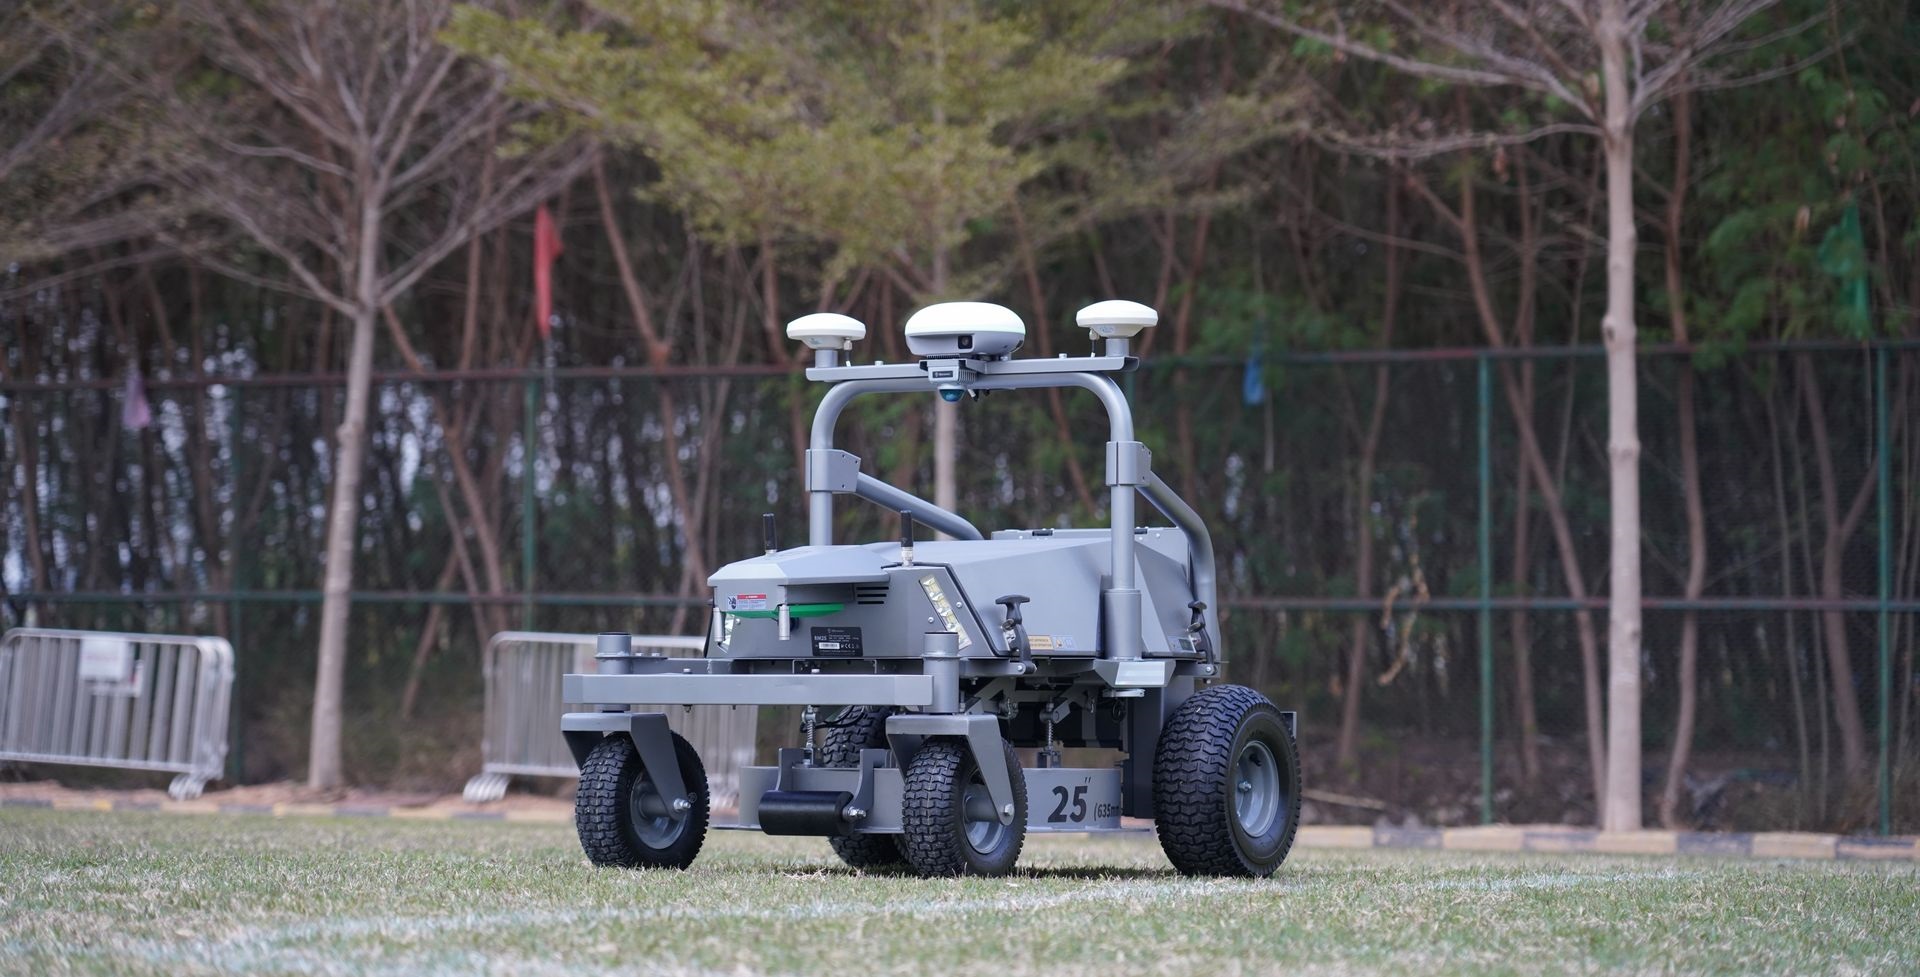 FJ Dynamics-maairobot voor grote grasvelden en sportvelden | Tuin en Park Techniek